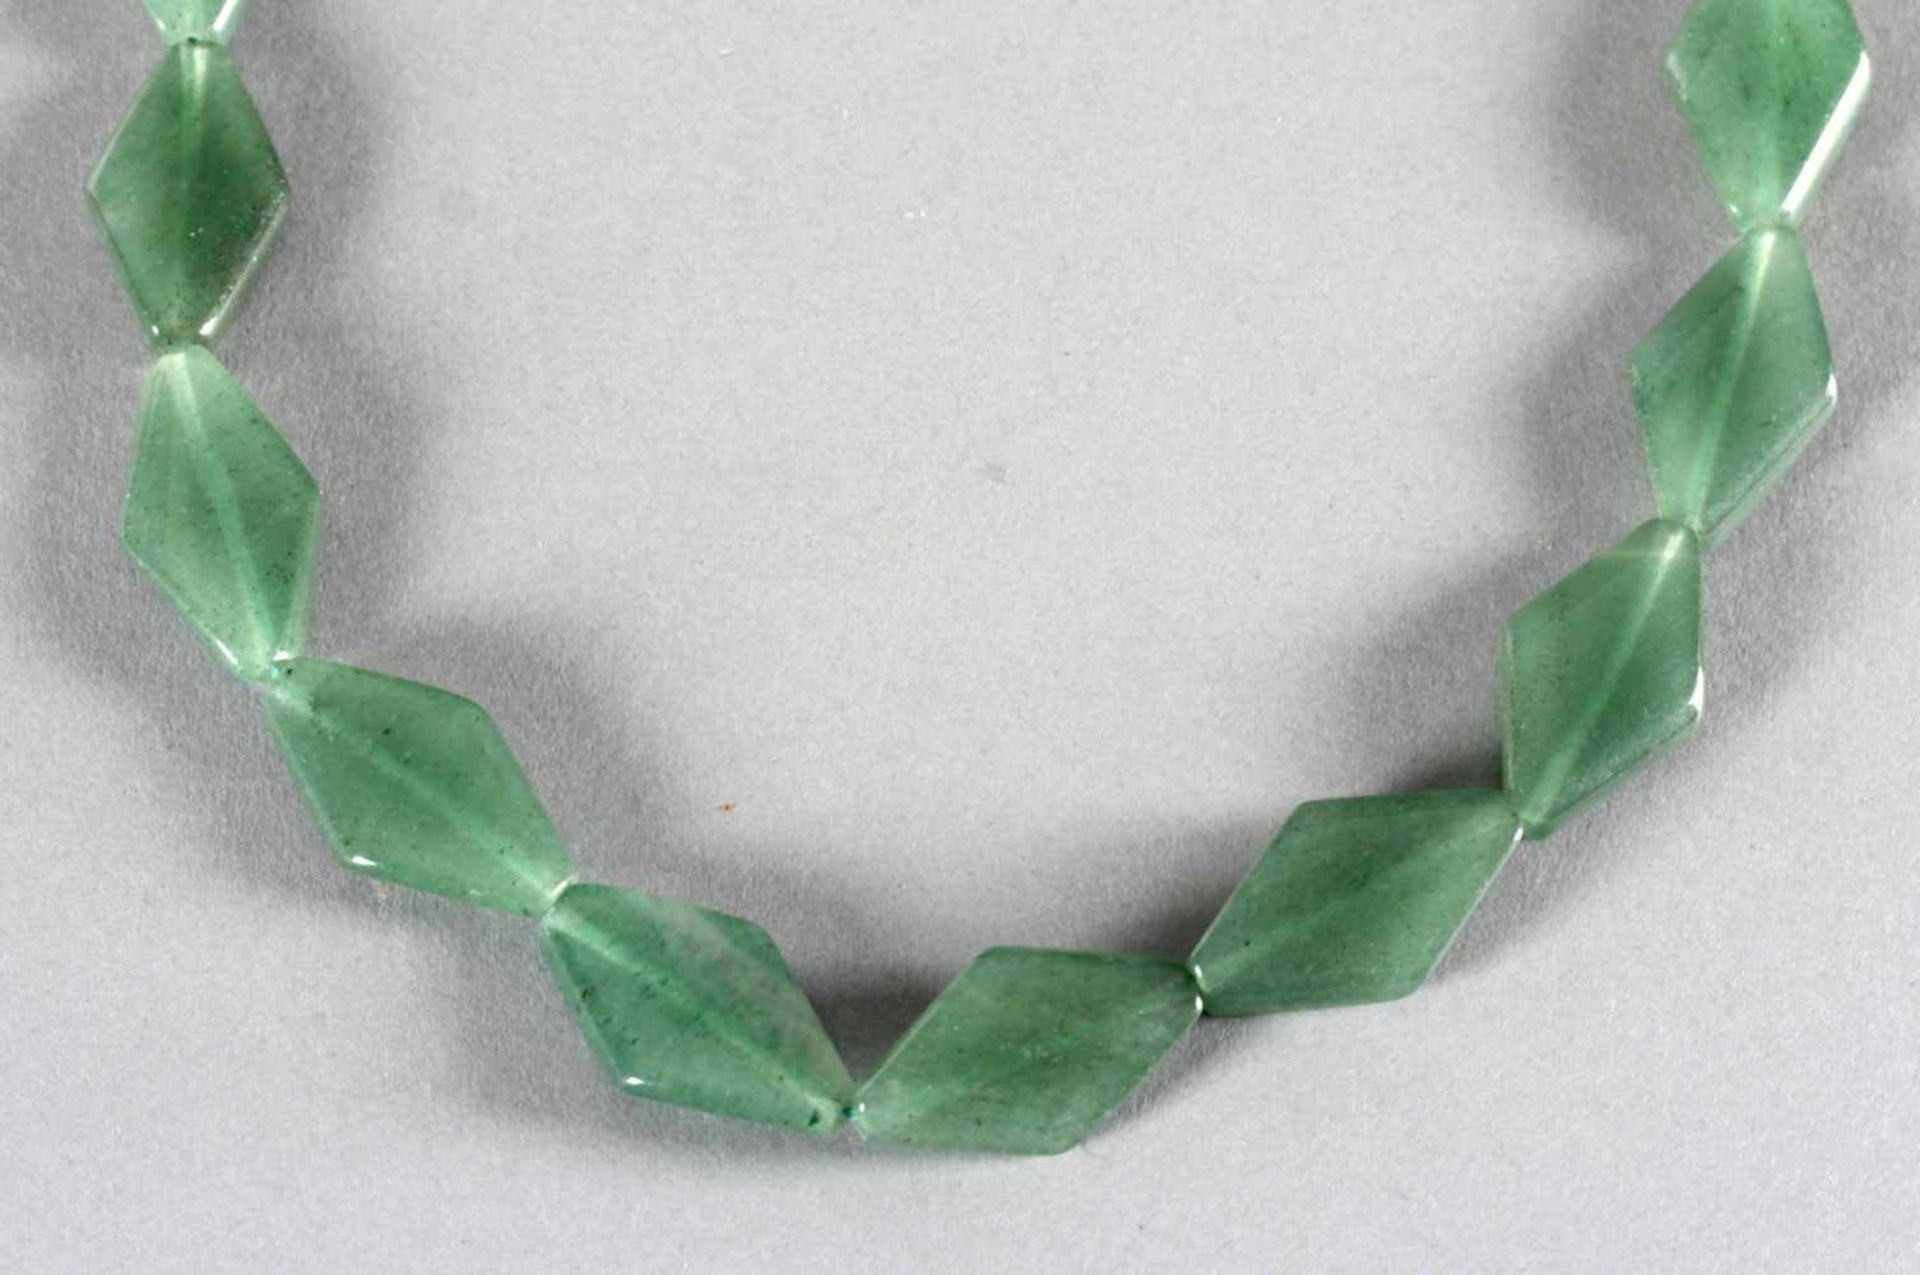 Kette aus Jade, 2. H. 20. Jh.die rautenförmigen Glieder aus grüner Jade mit einer Länge von je 2,7